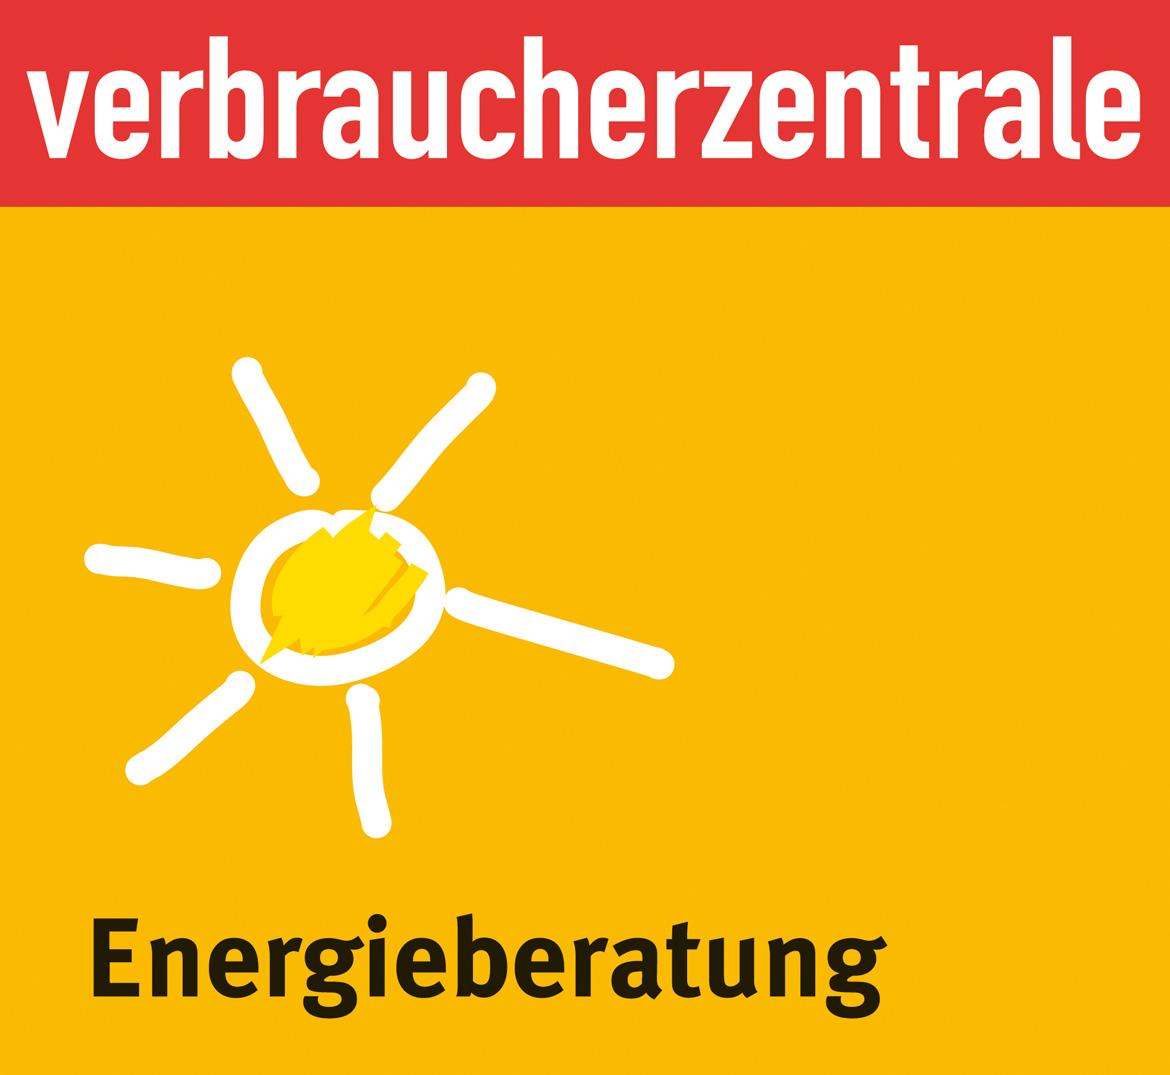 Das Bild zeigt das Logo der Verbraucherzentrale Energieberatung NRW